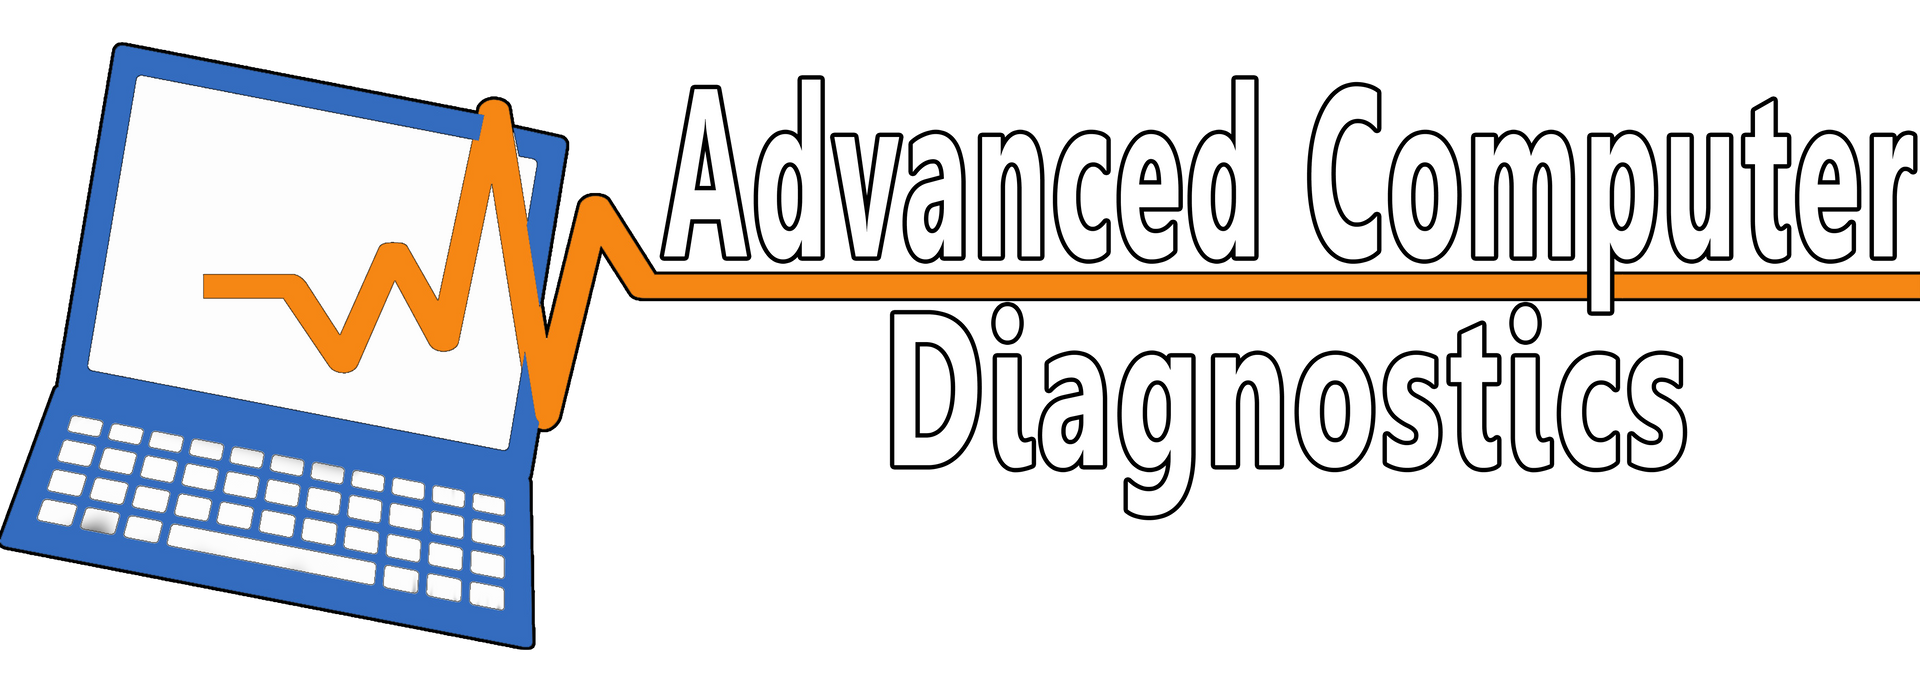 Advanced-Computer-Diagnostics-logo